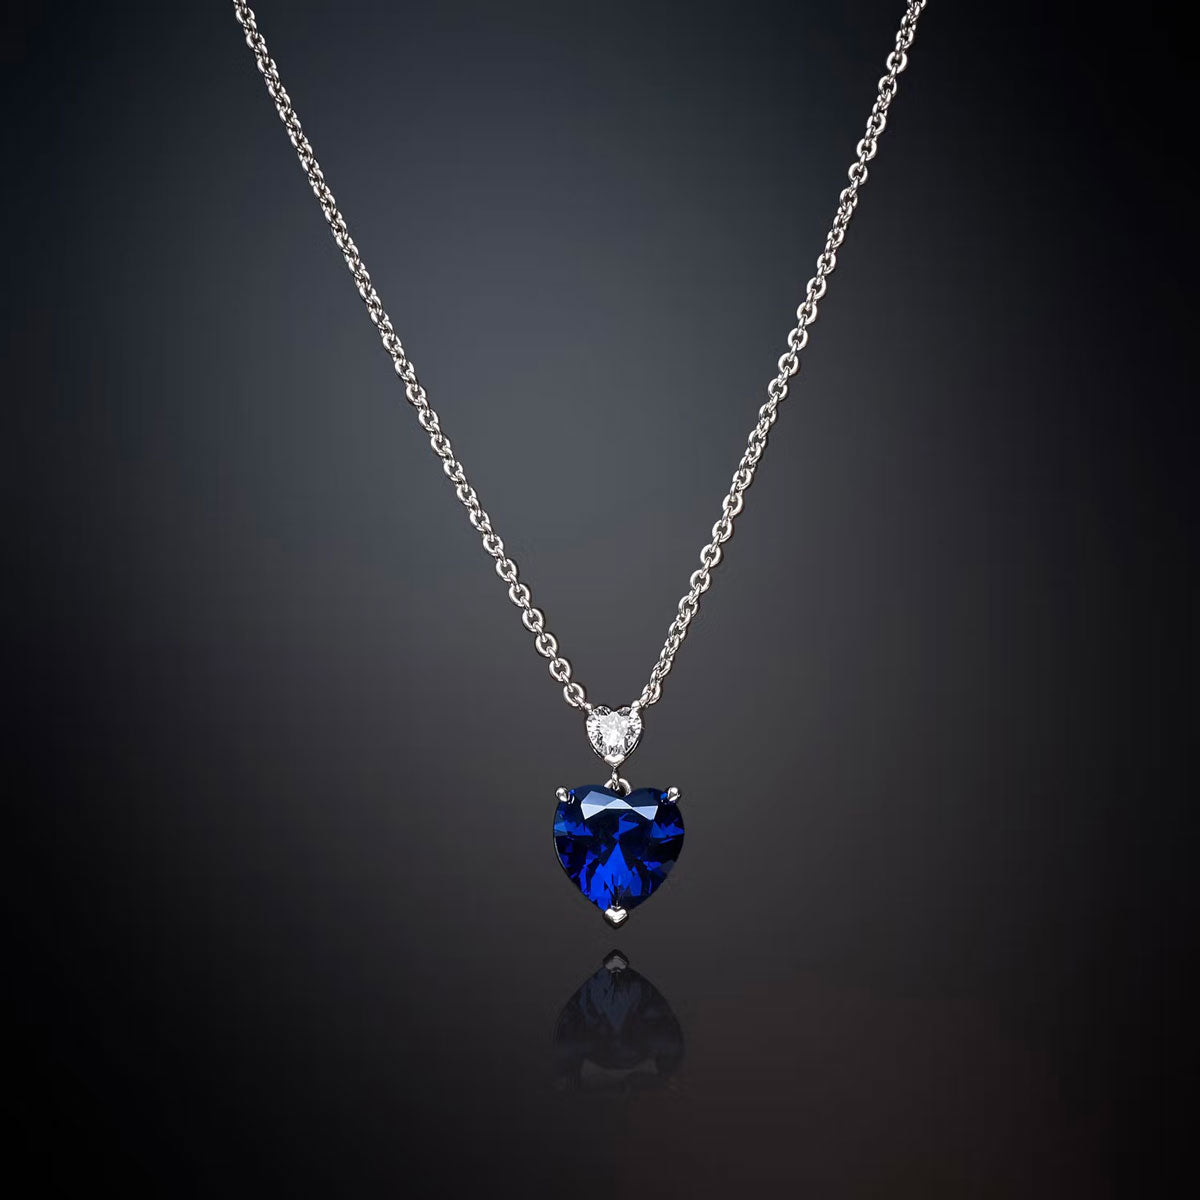 Collana con Cuore Blu della collezione DIAMOND HEARD disegnata da CHIARA FERRAGNI e realizzata in acciaio con finitura in platino.